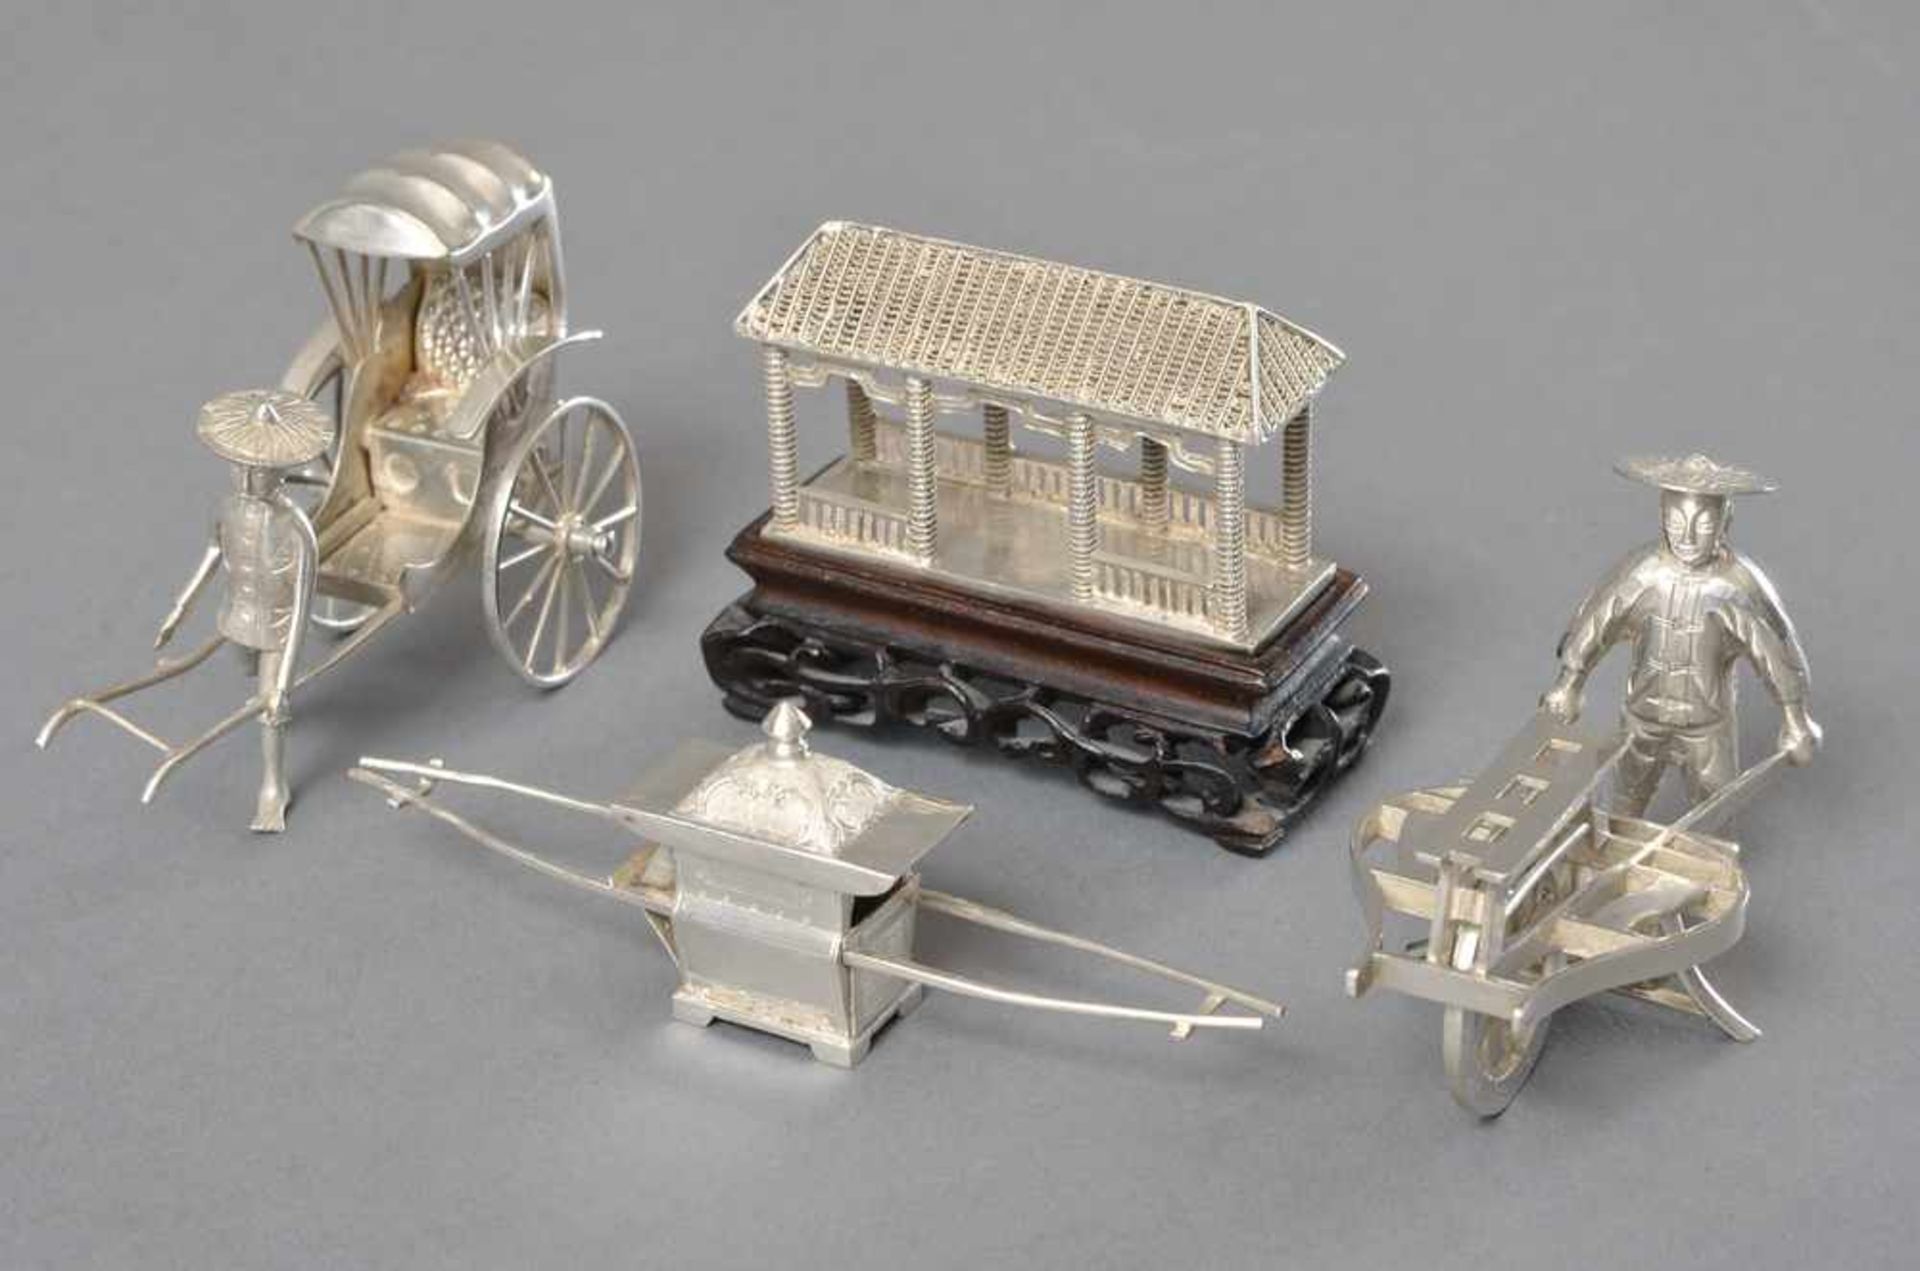 4 Diverse Chinesische Miniaturen: "Rikscha", "Scherenschleifer", "Sänfte" und "Pavillon", Silber